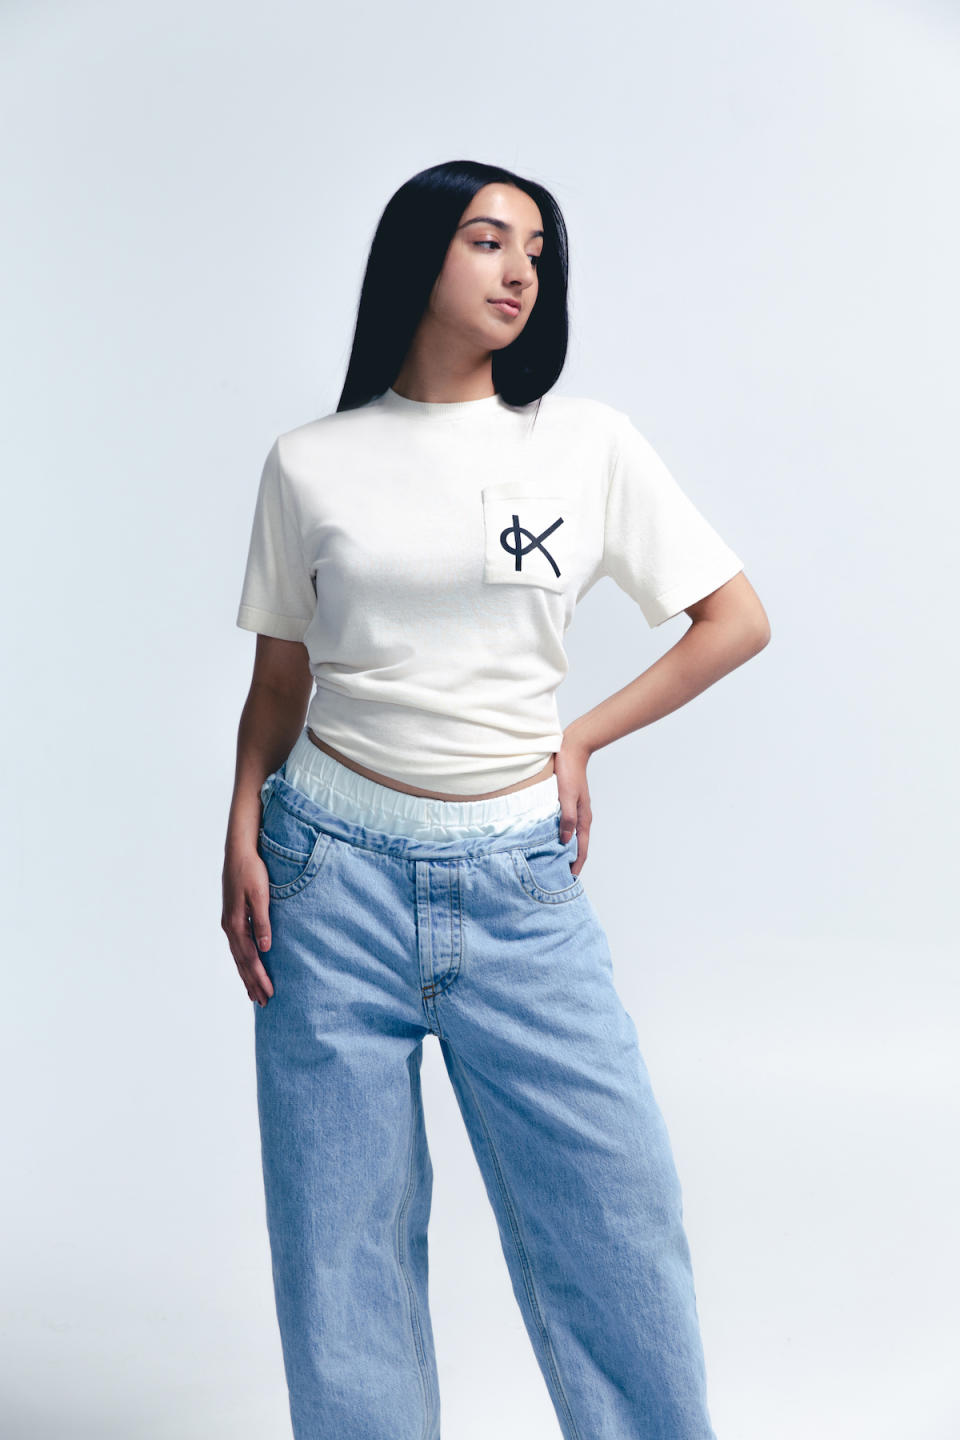 Aditi Mayer in the Kelsun T-shirt.